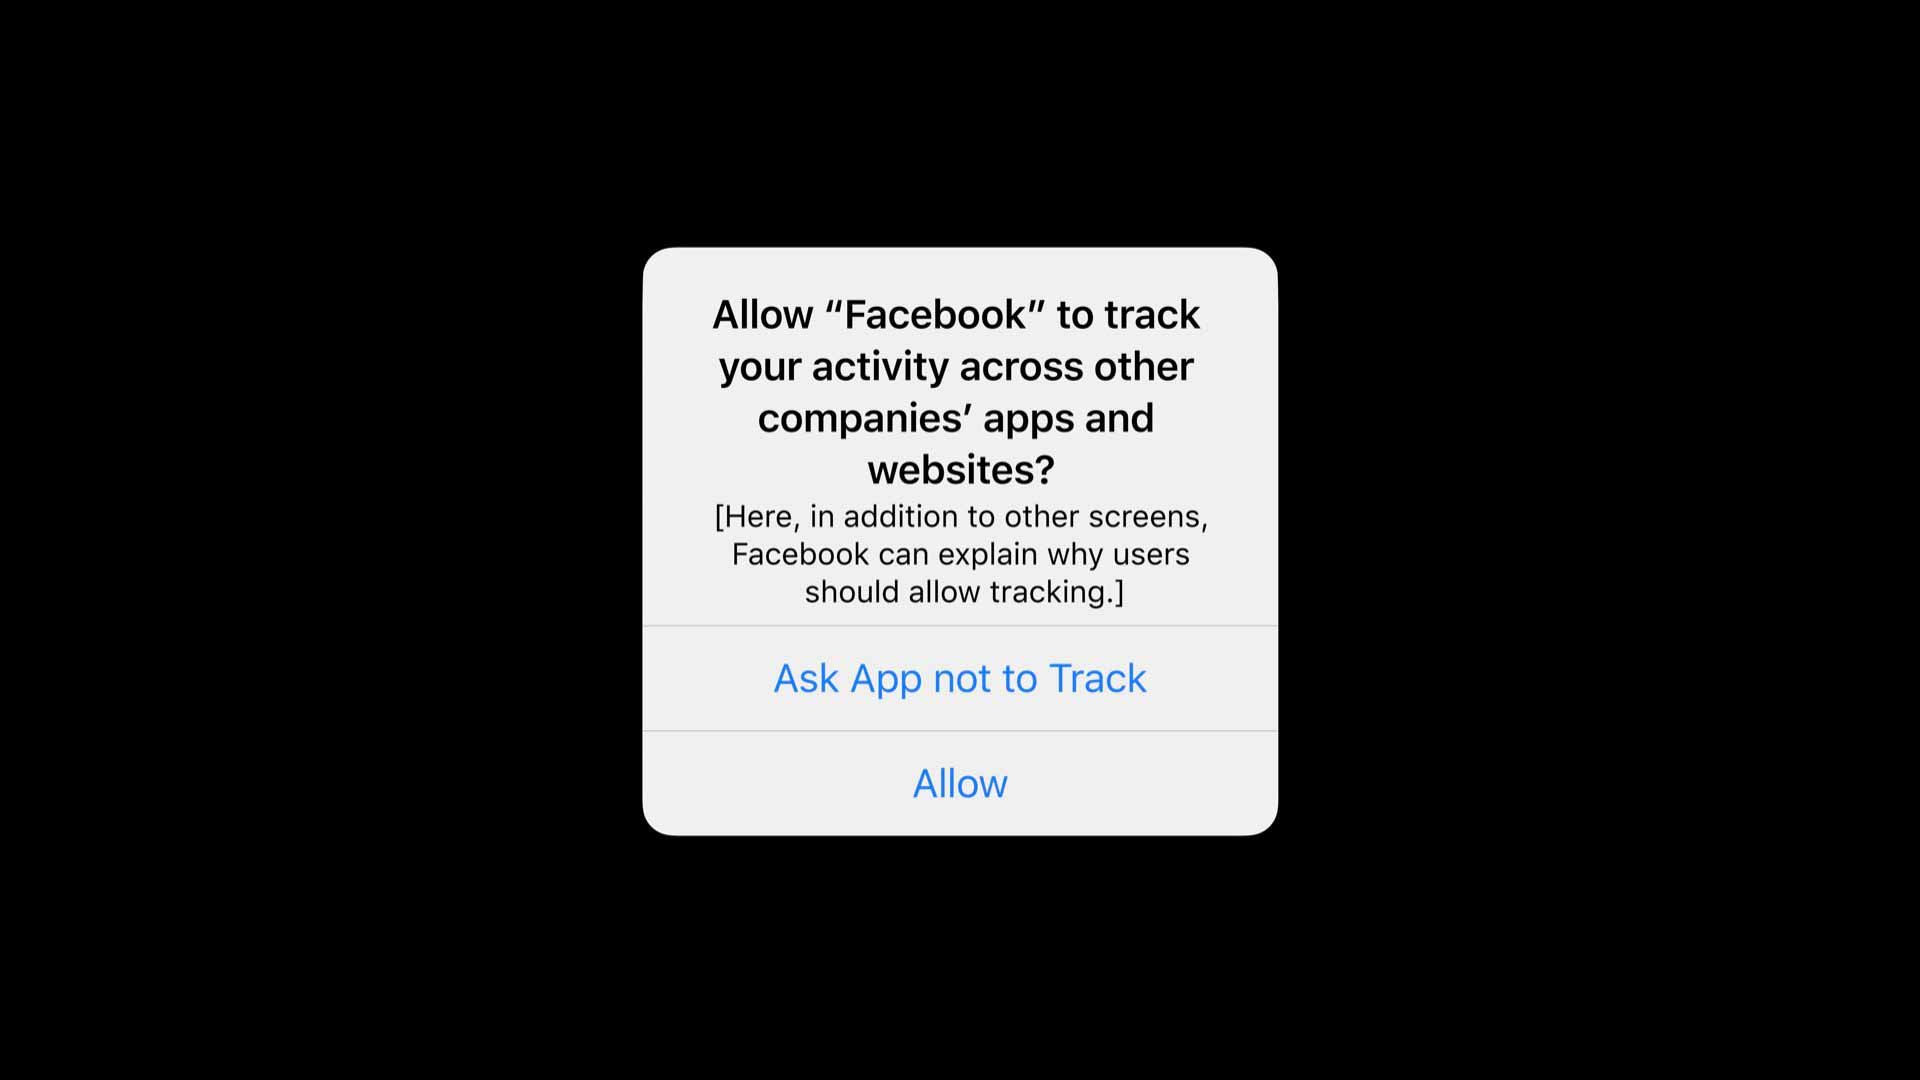 Новый PR-блиц Facebook рекламирует преимущества персонализированной рекламы перед функцией конфиденциальности Apple